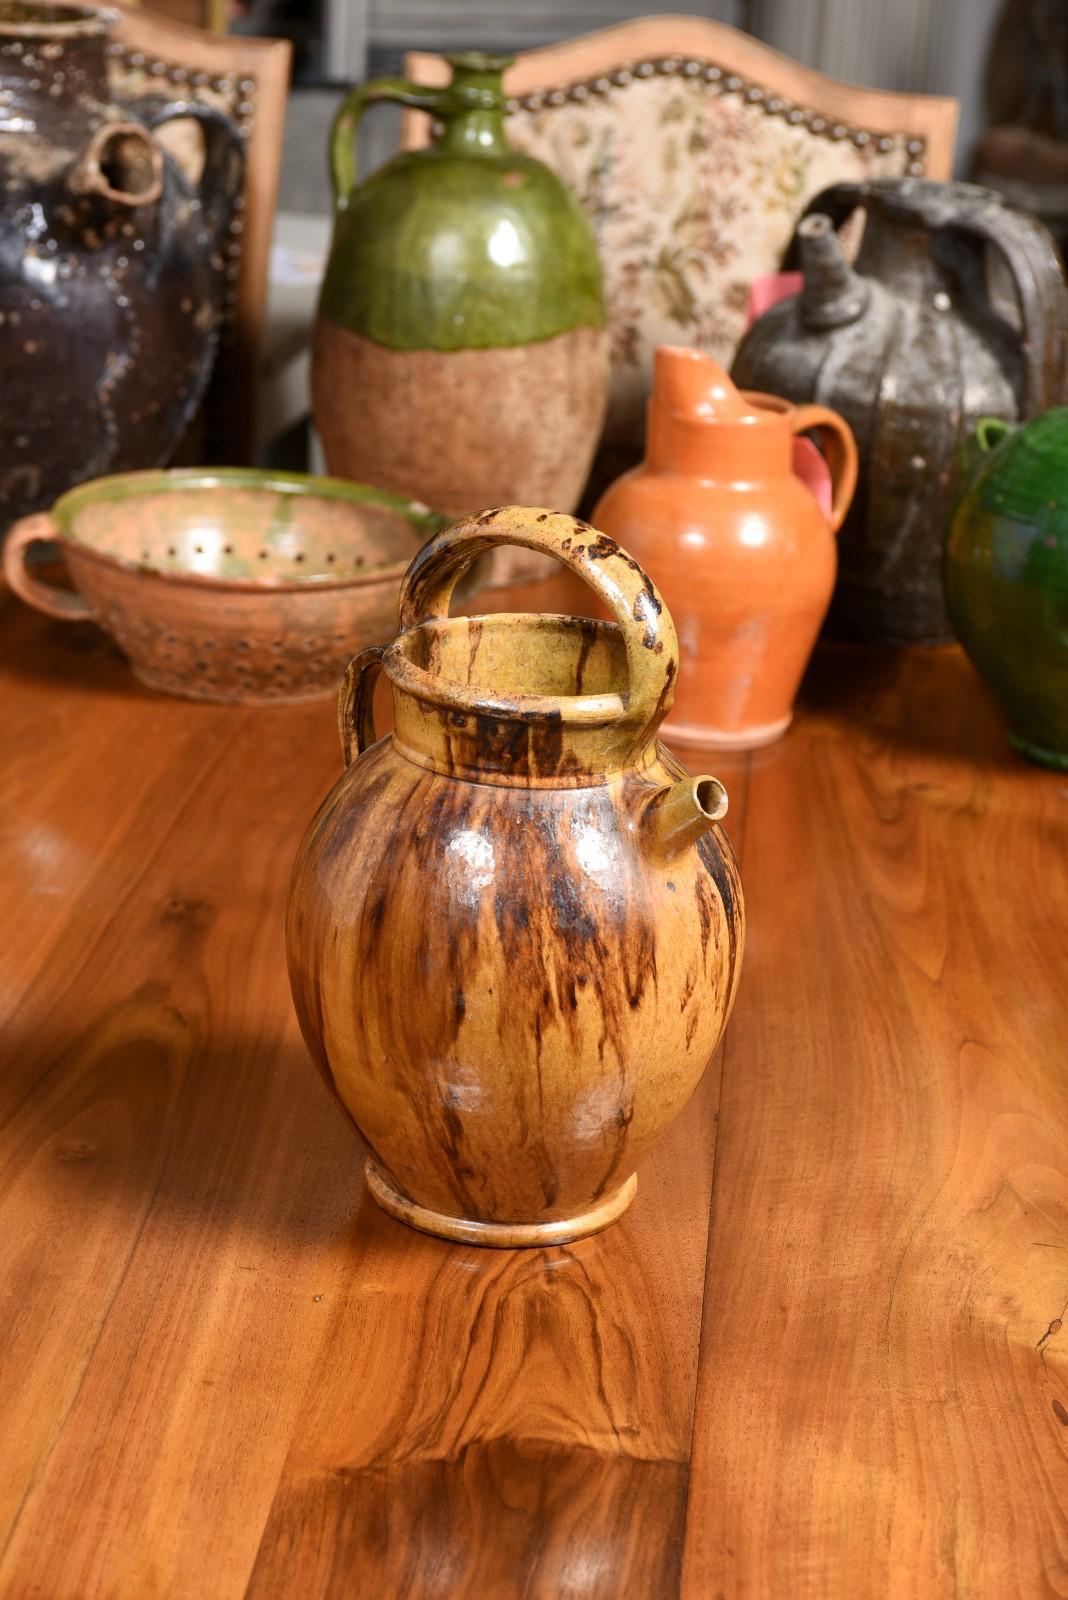 Verseuse à huile d'olive rustique en poterie française du 19e siècle avec bec avant, grande poignée supérieure et arrière. Cette cruche à huile d'olive en poterie française rustique du XIXe siècle dégage une irrésistible allure d'antan et témoigne